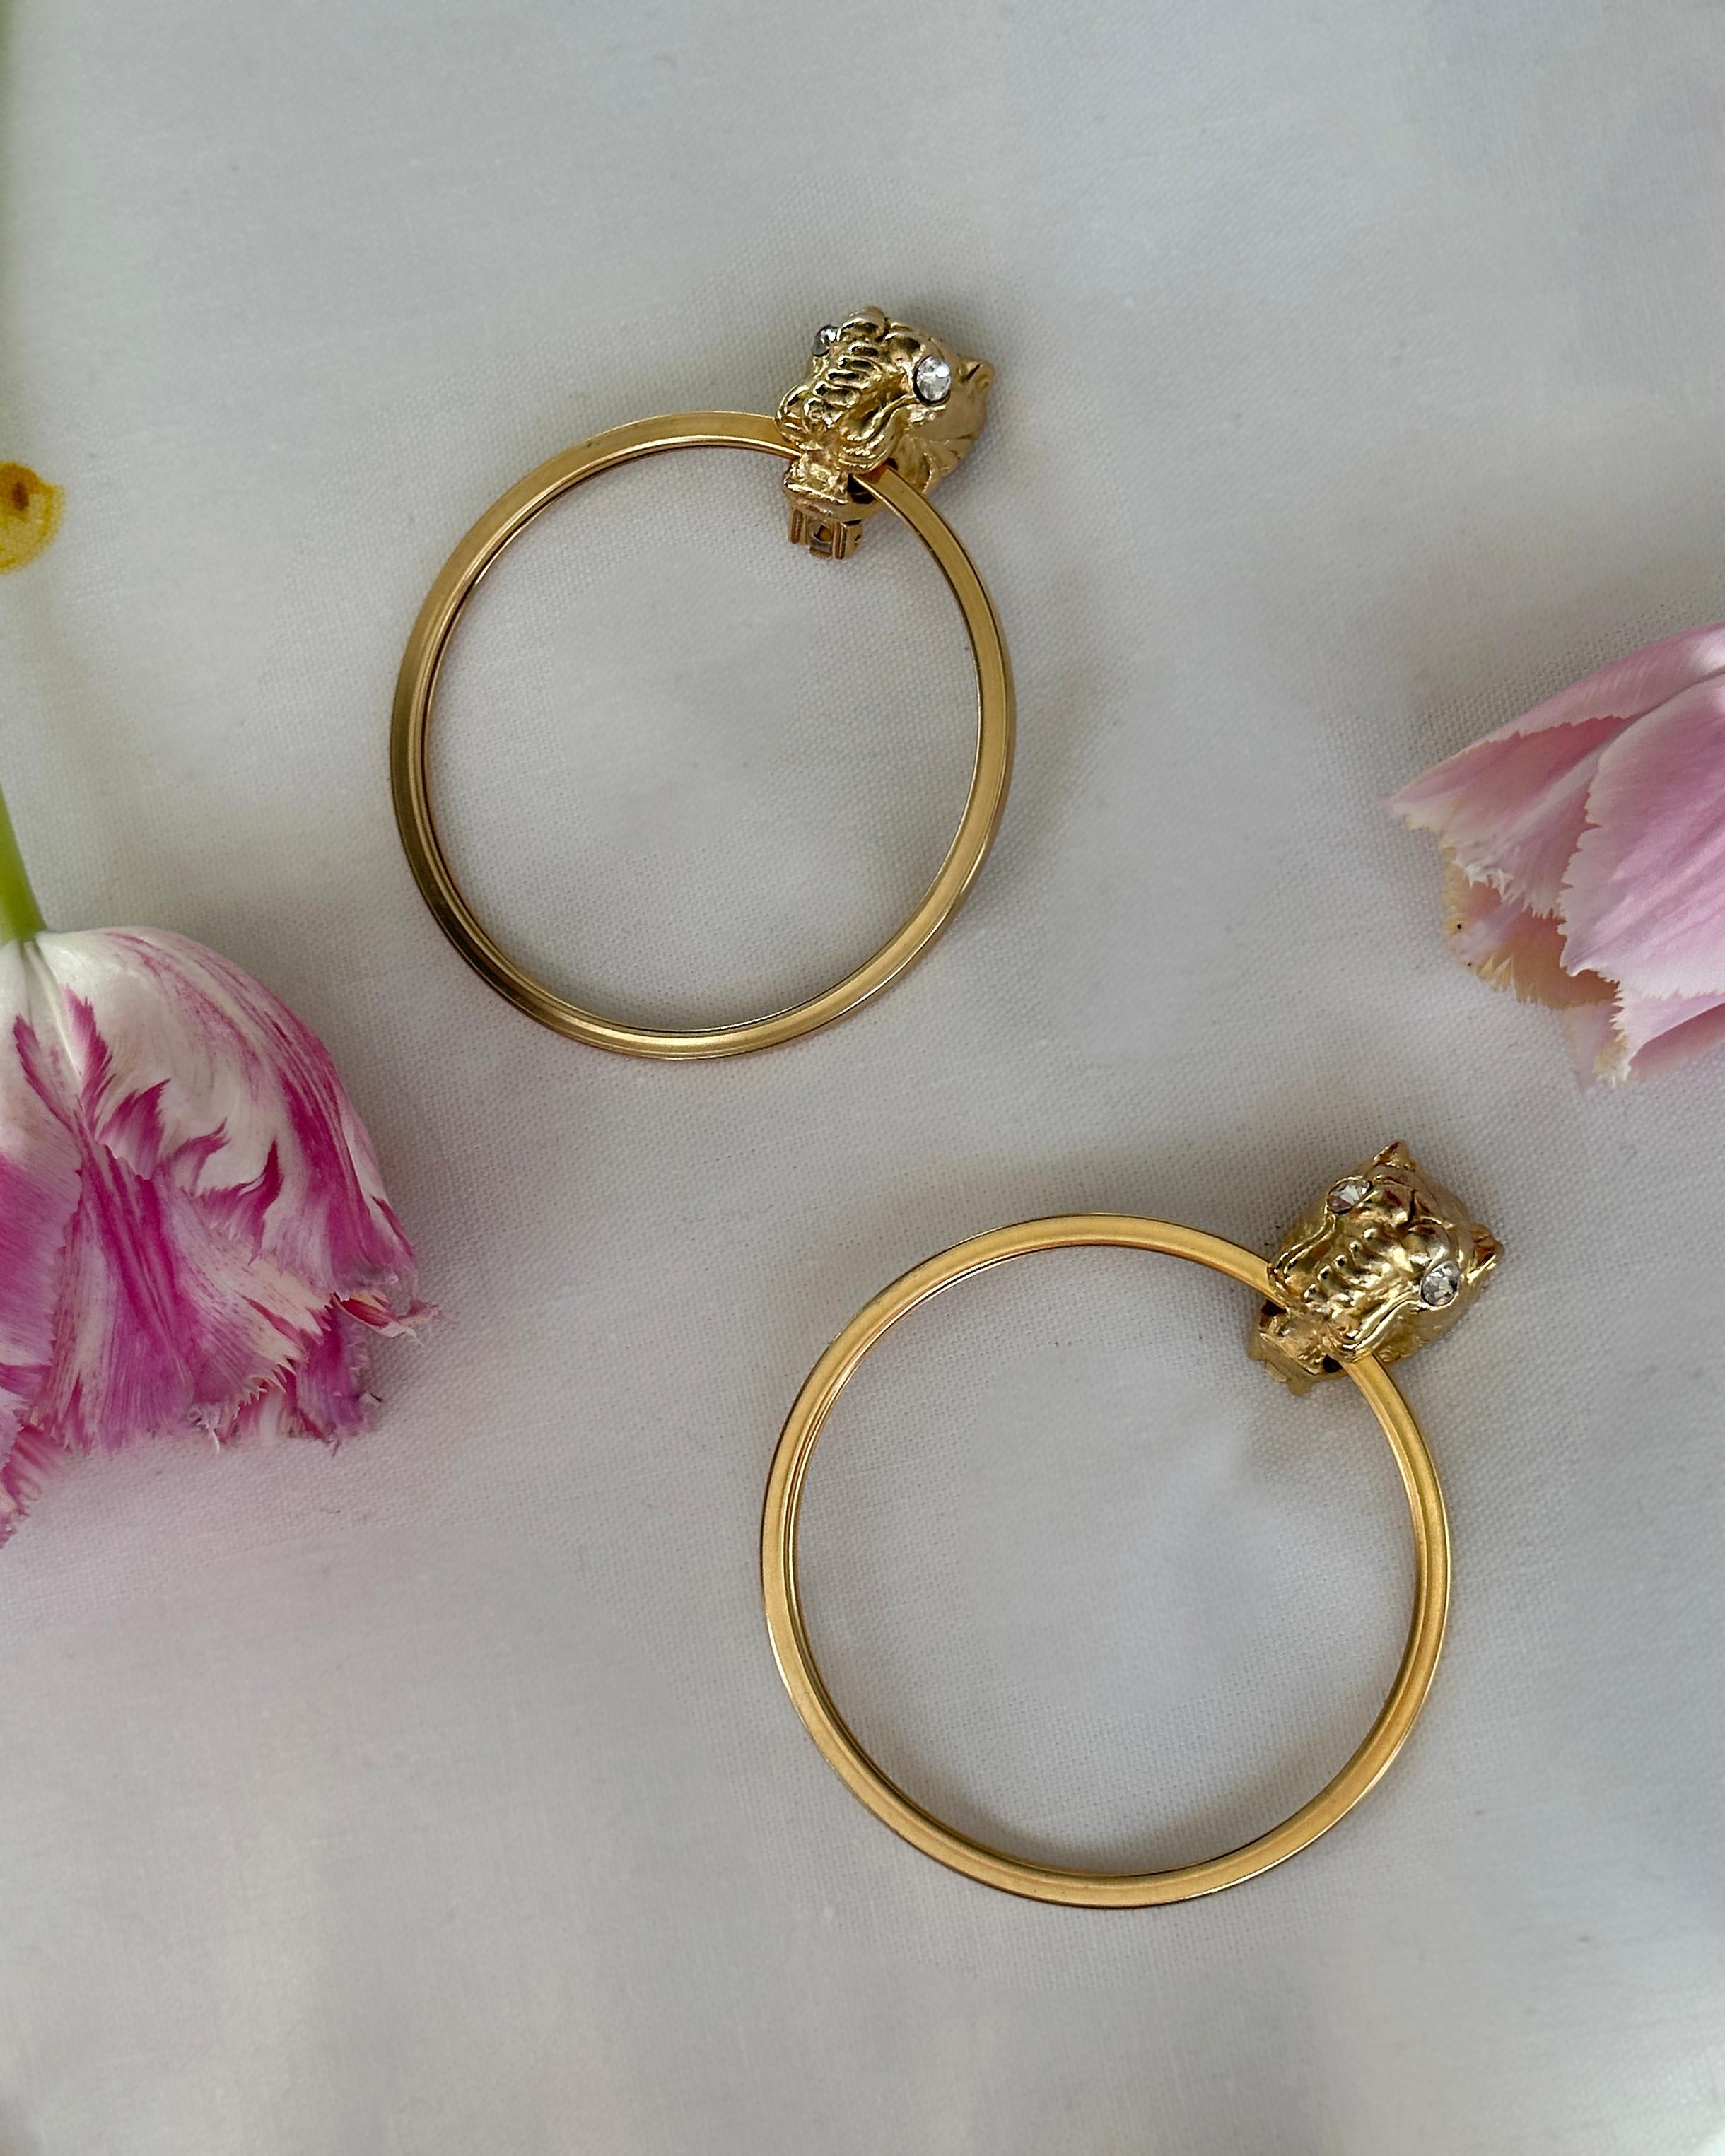 Große Vintage-Ohrringe aus Gold mit Panthermotiv, Givenchy zugeschrieben (Zeitgenössisch)